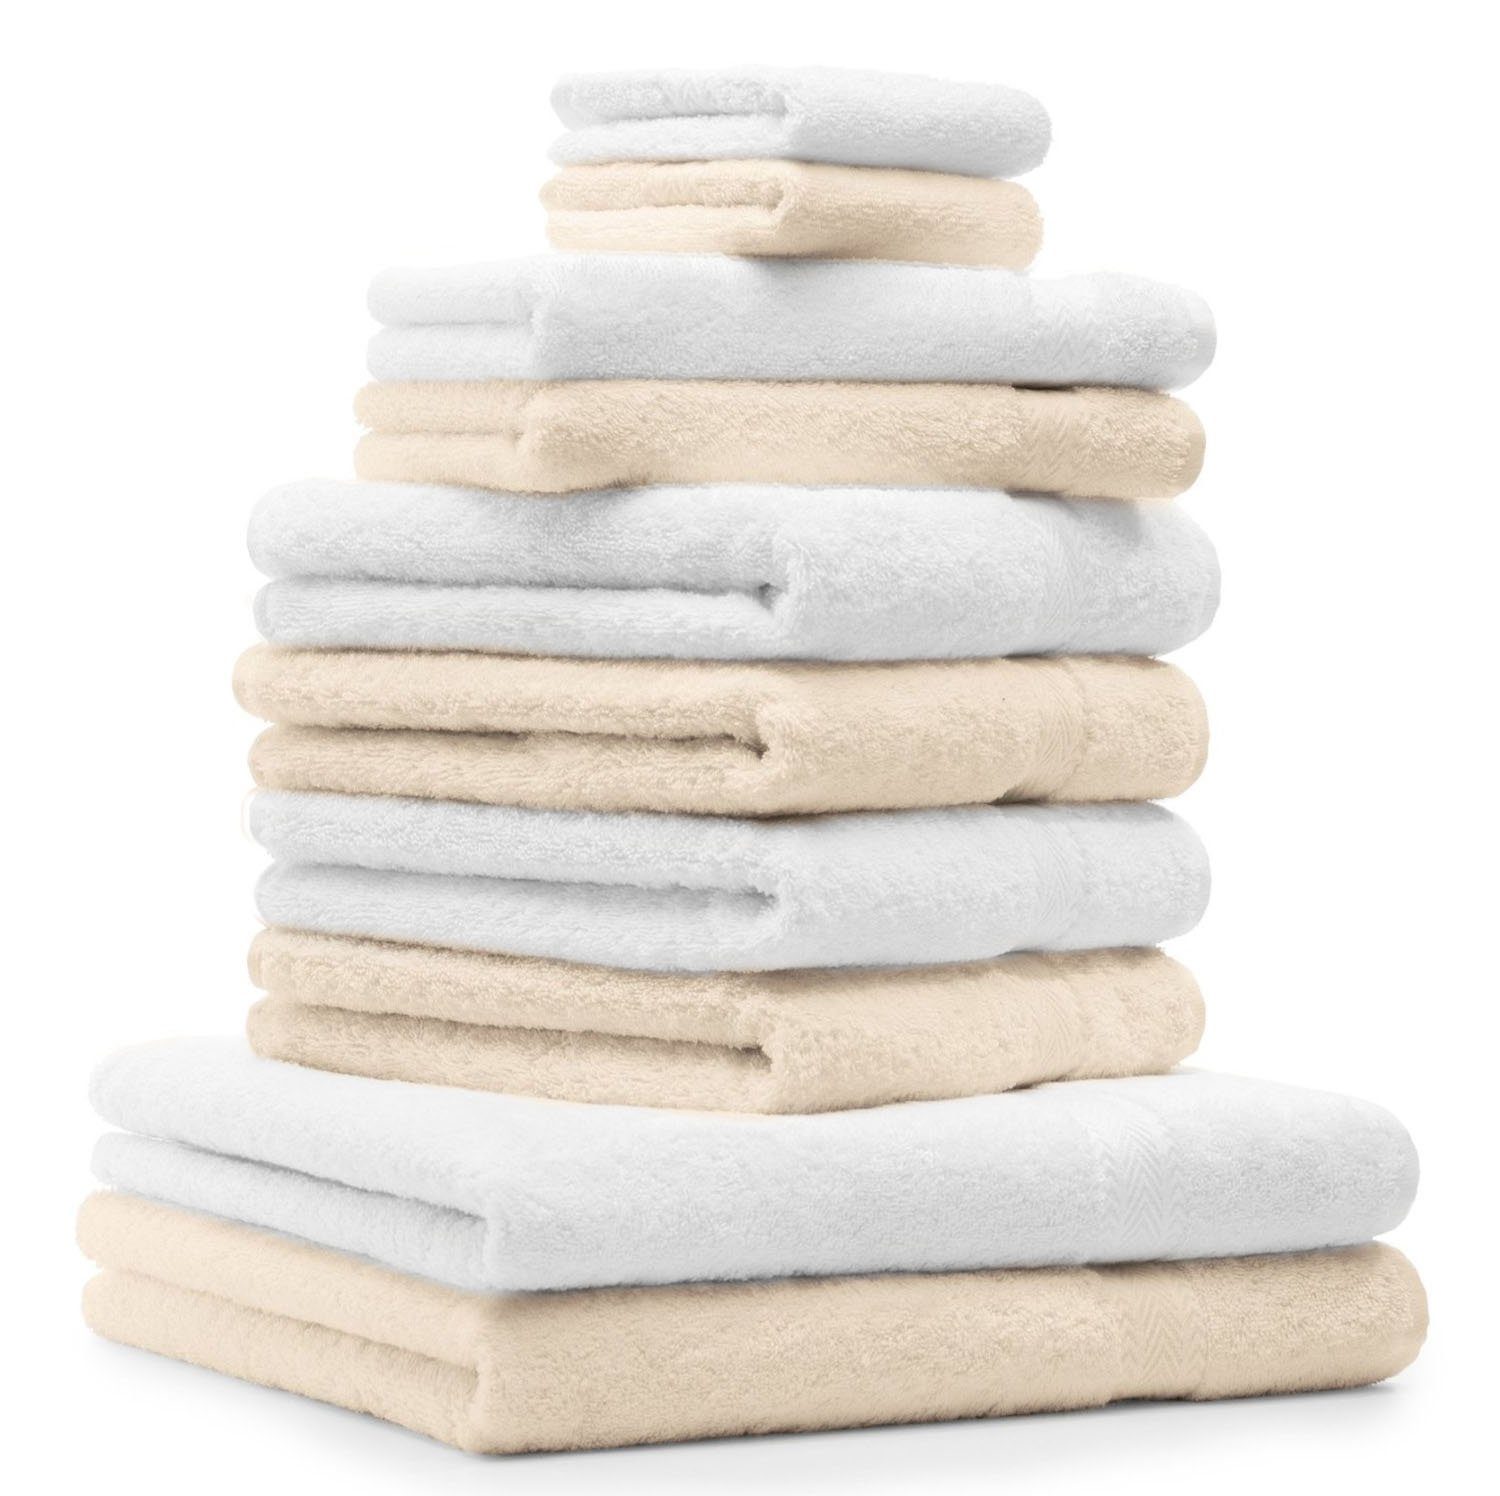 Betz Handtuch Set 10-TLG. Handtuch-Set Classic Farbe beige und weiß, 100% Baumwolle